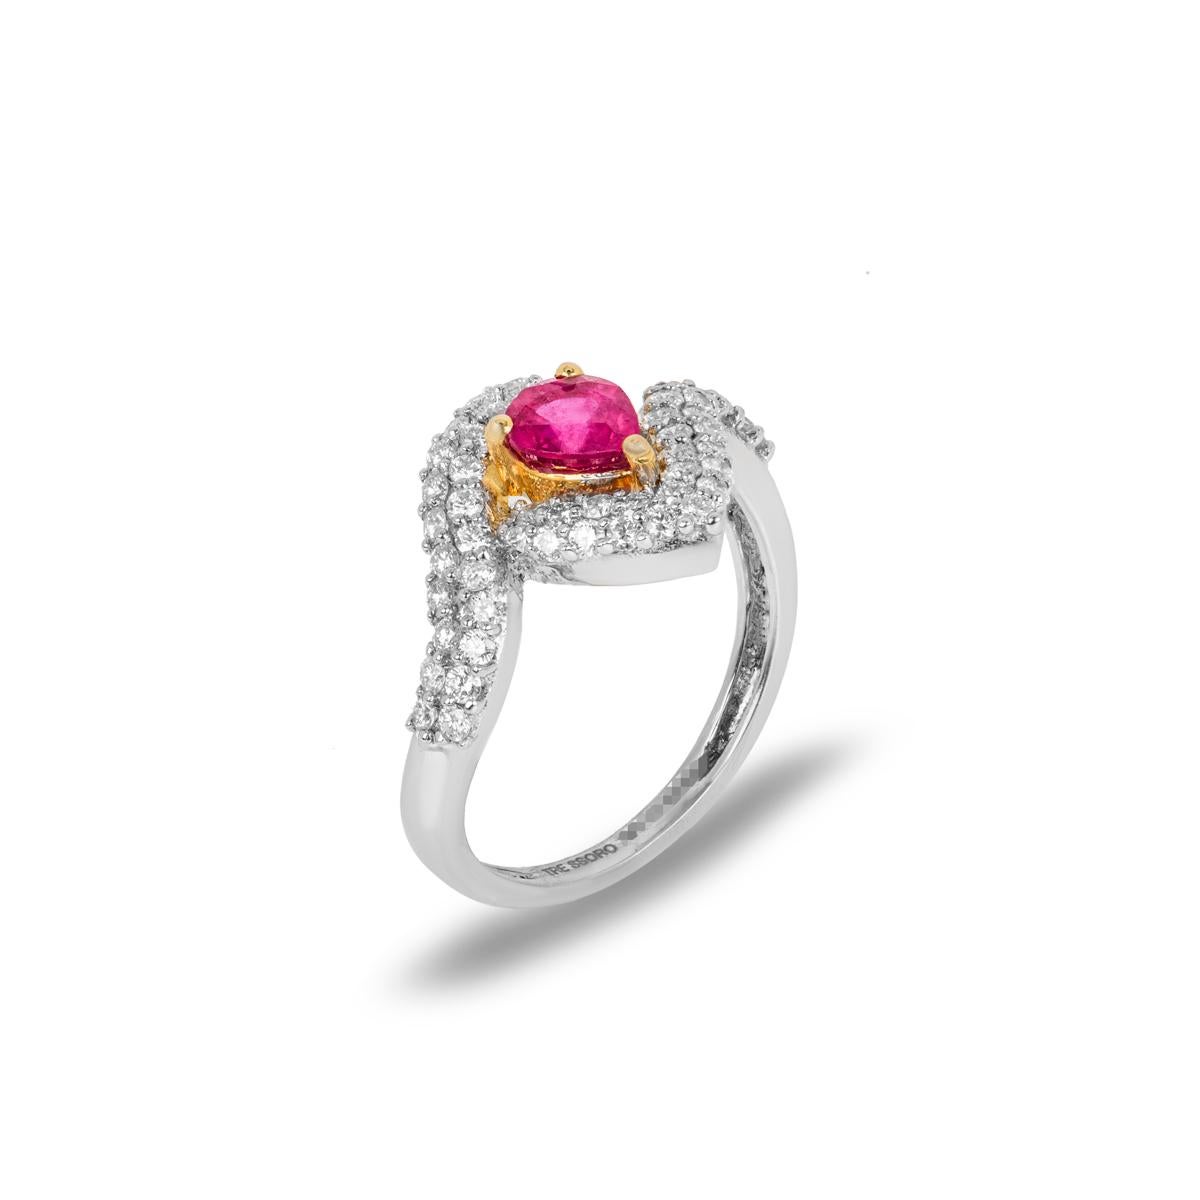 Ein atemberaubender Kleiderring aus 18 Karat Weißgold mit Rubinen und Diamanten. Der Ring ist in der Mitte mit einem Rubin im Birnenschliff von 0,85 Karat besetzt, der eine gleichmäßige, satte Farbe aufweist. Der Rubin ist von 2 Reihen runder